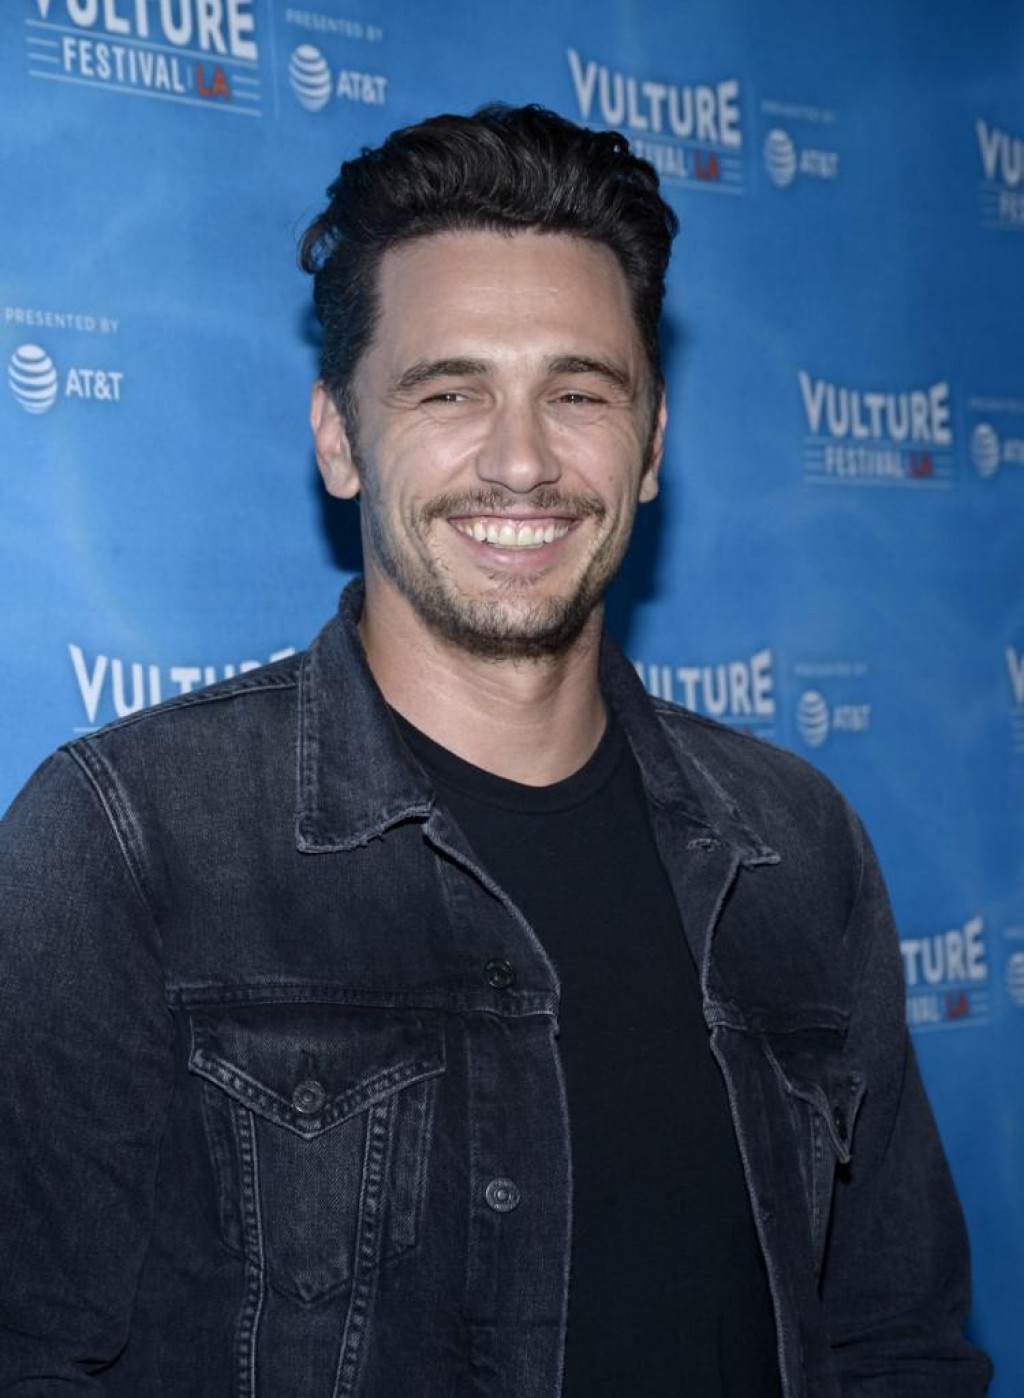 Glumac James Franco snimljen 2017. godine